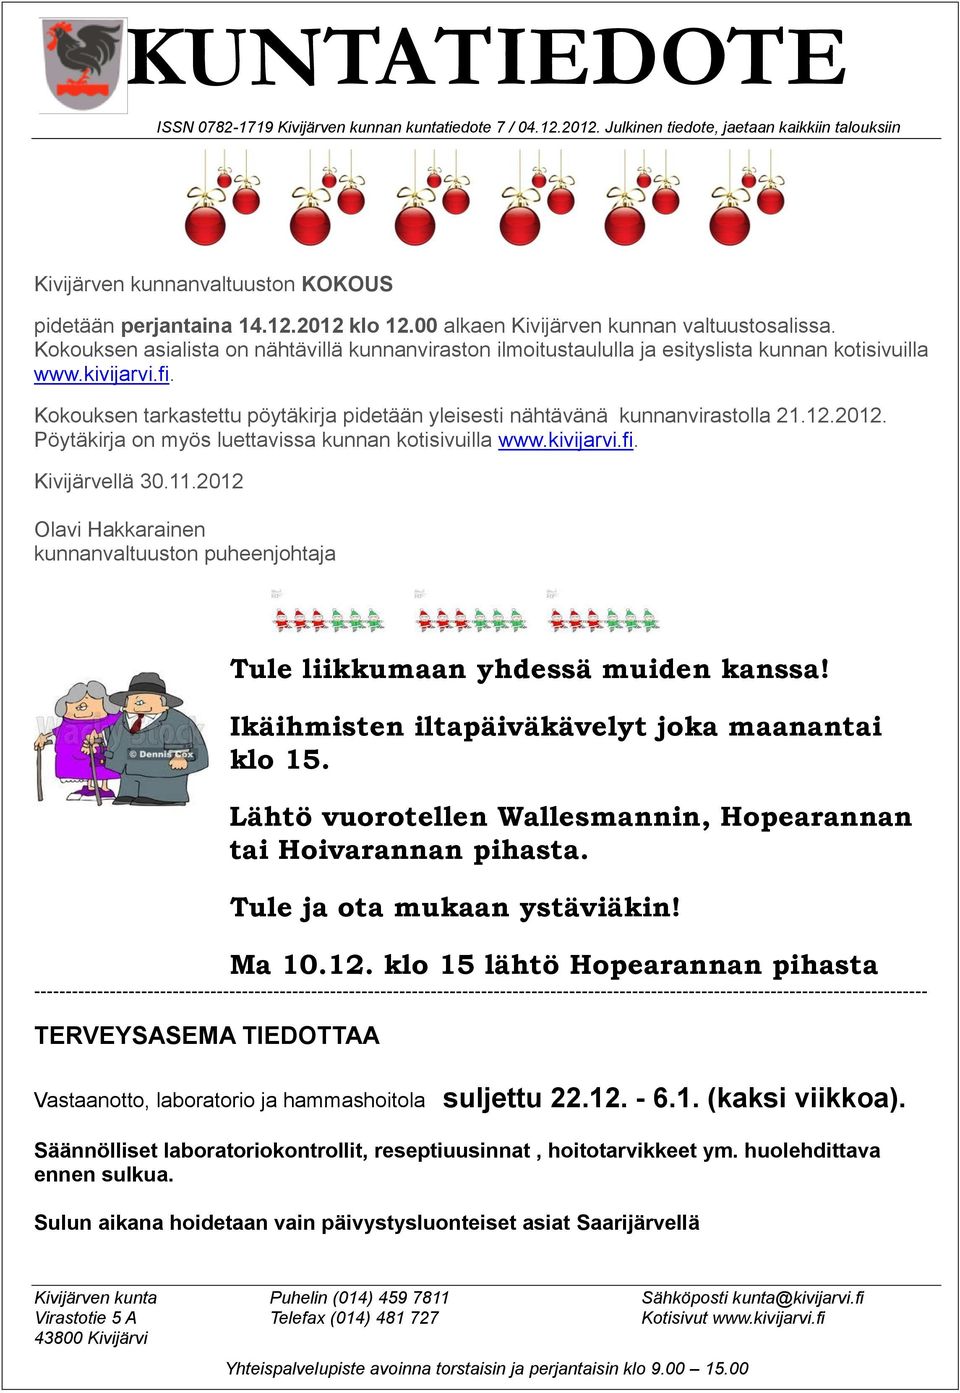 Kokouksen tarkastettu pöytäkirja pidetään yleisesti nähtävänä kunnanvirastolla 21.12.2012. Pöytäkirja on myös luettavissa kunnan kotisivuilla www.kivijarvi.fi. Kivijärvellä 30.11.